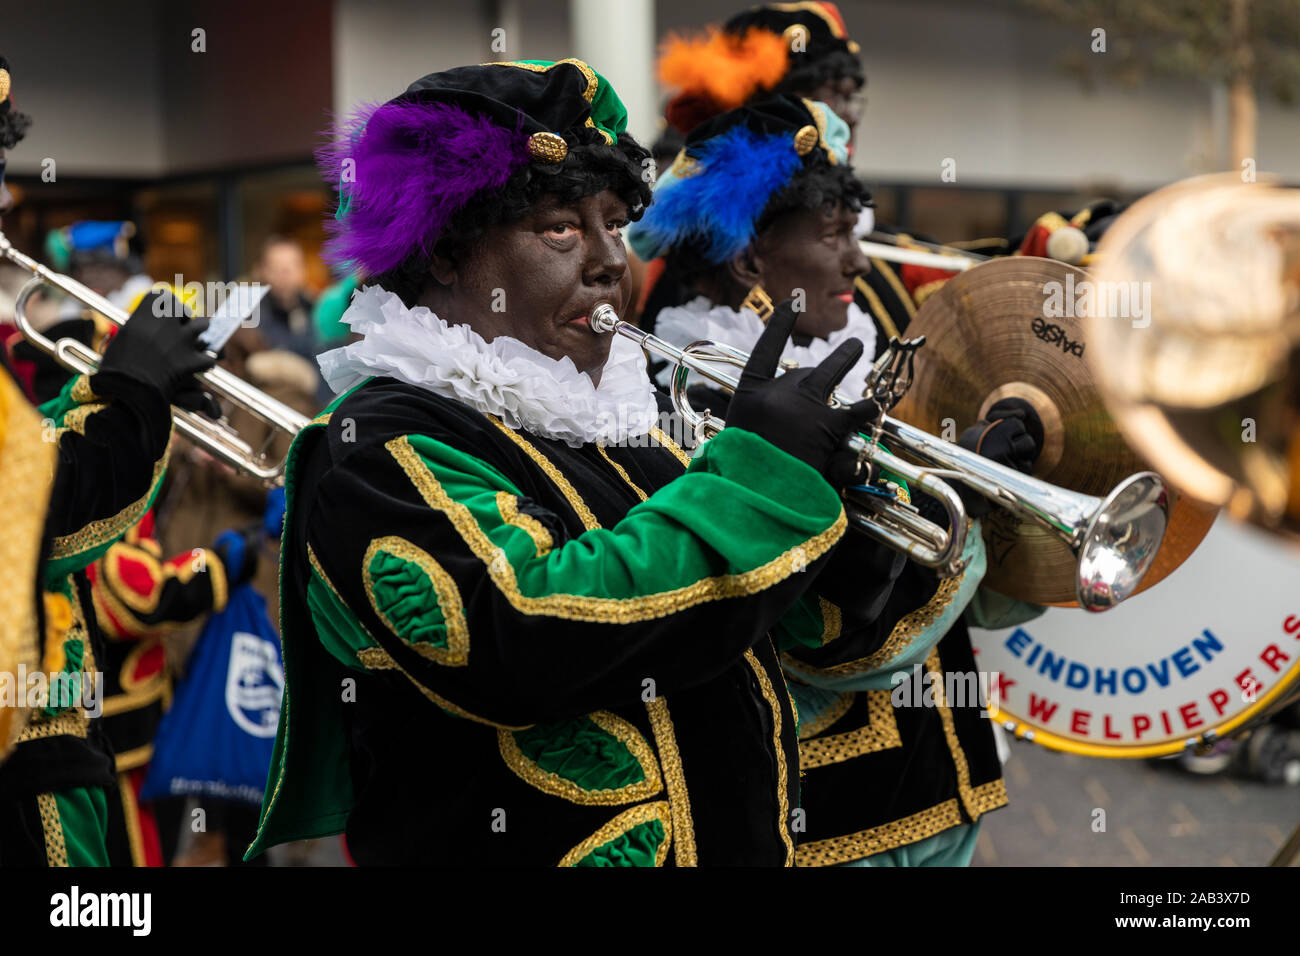 Eindhoven, Niederlande, 23. November 2019. Ein piet tragen ein buntes Kostüm in einer Blaskapelle spielen Sinterklaas Musik auf einer Trompete. Niederländische tra Stockfoto